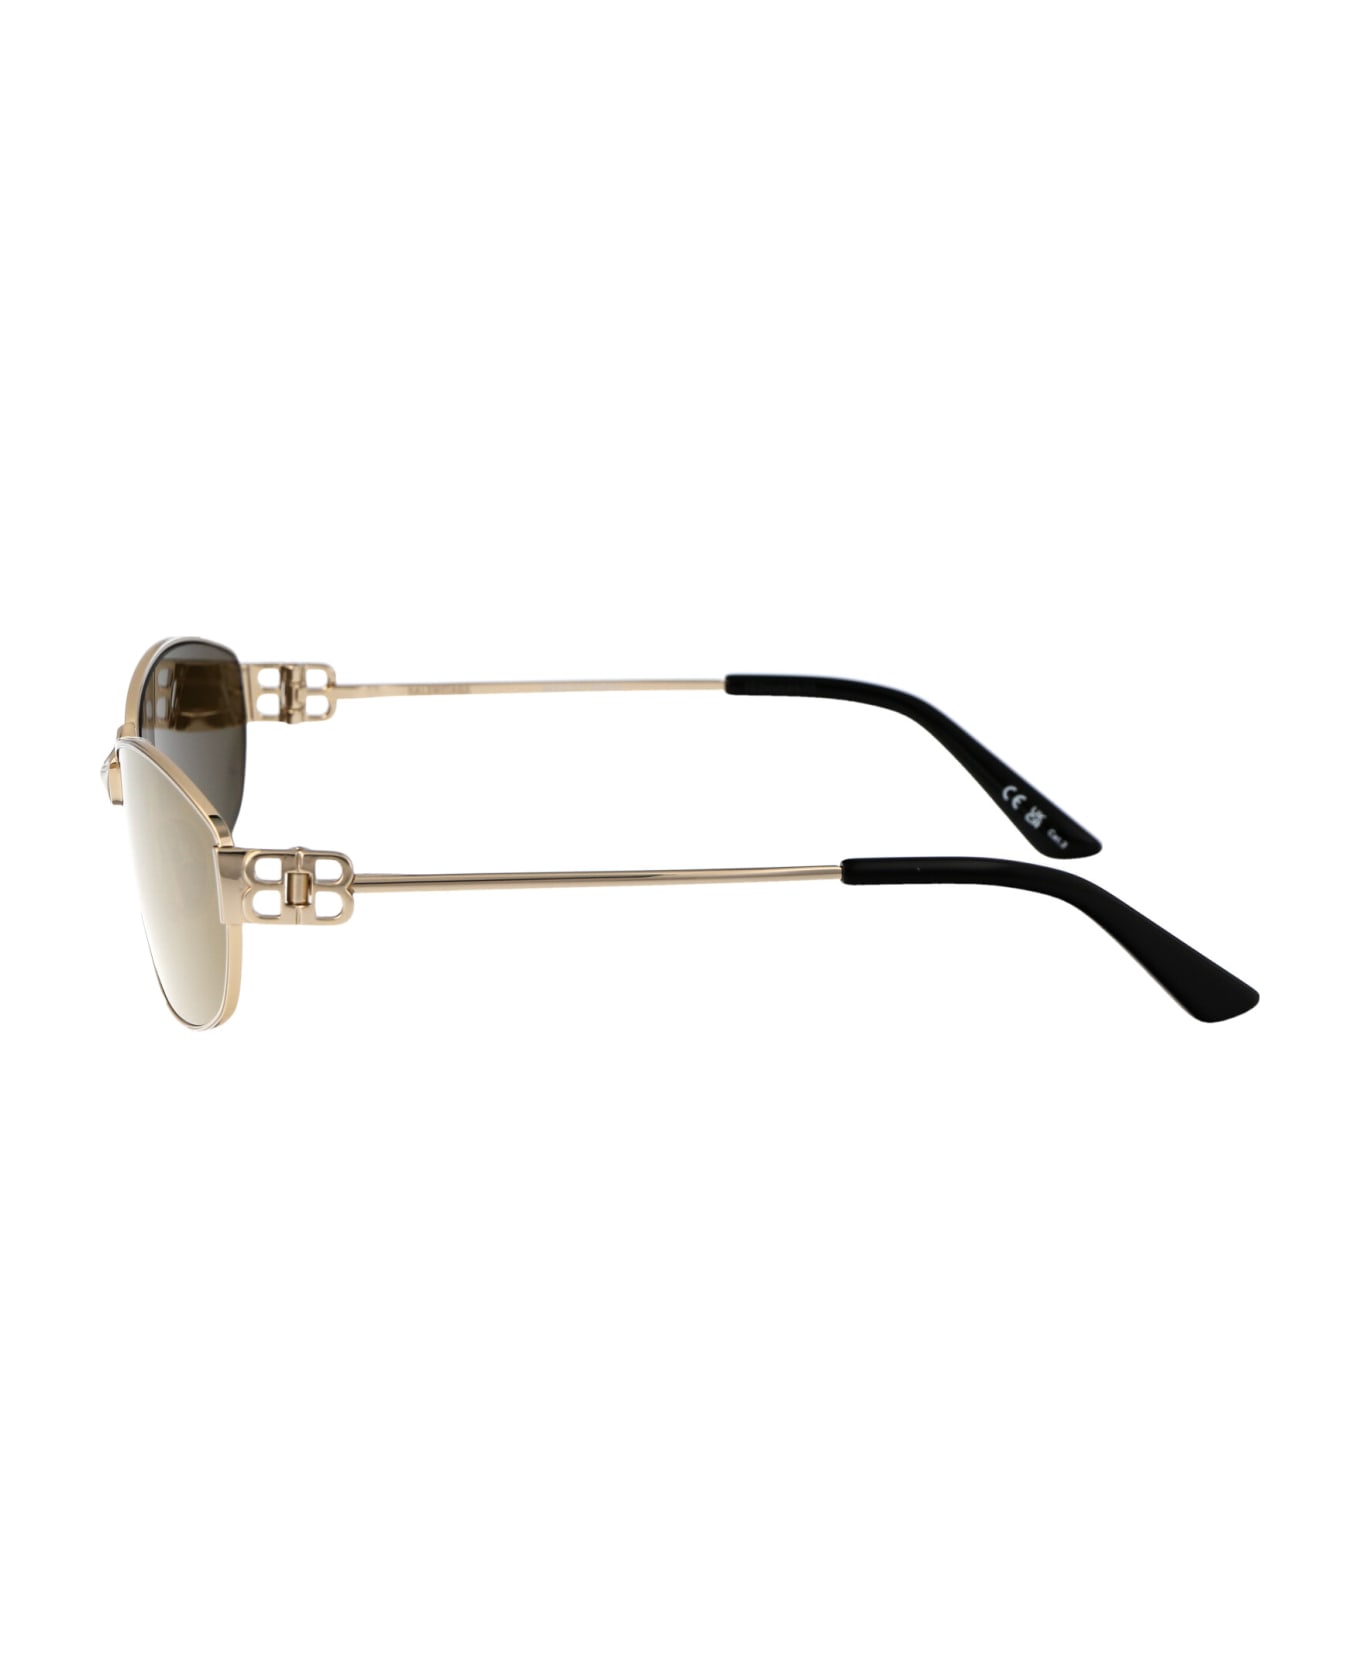 Balenciaga Eyewear Bb0336s Sunglasses - 003 GOLD GOLD BRONZE